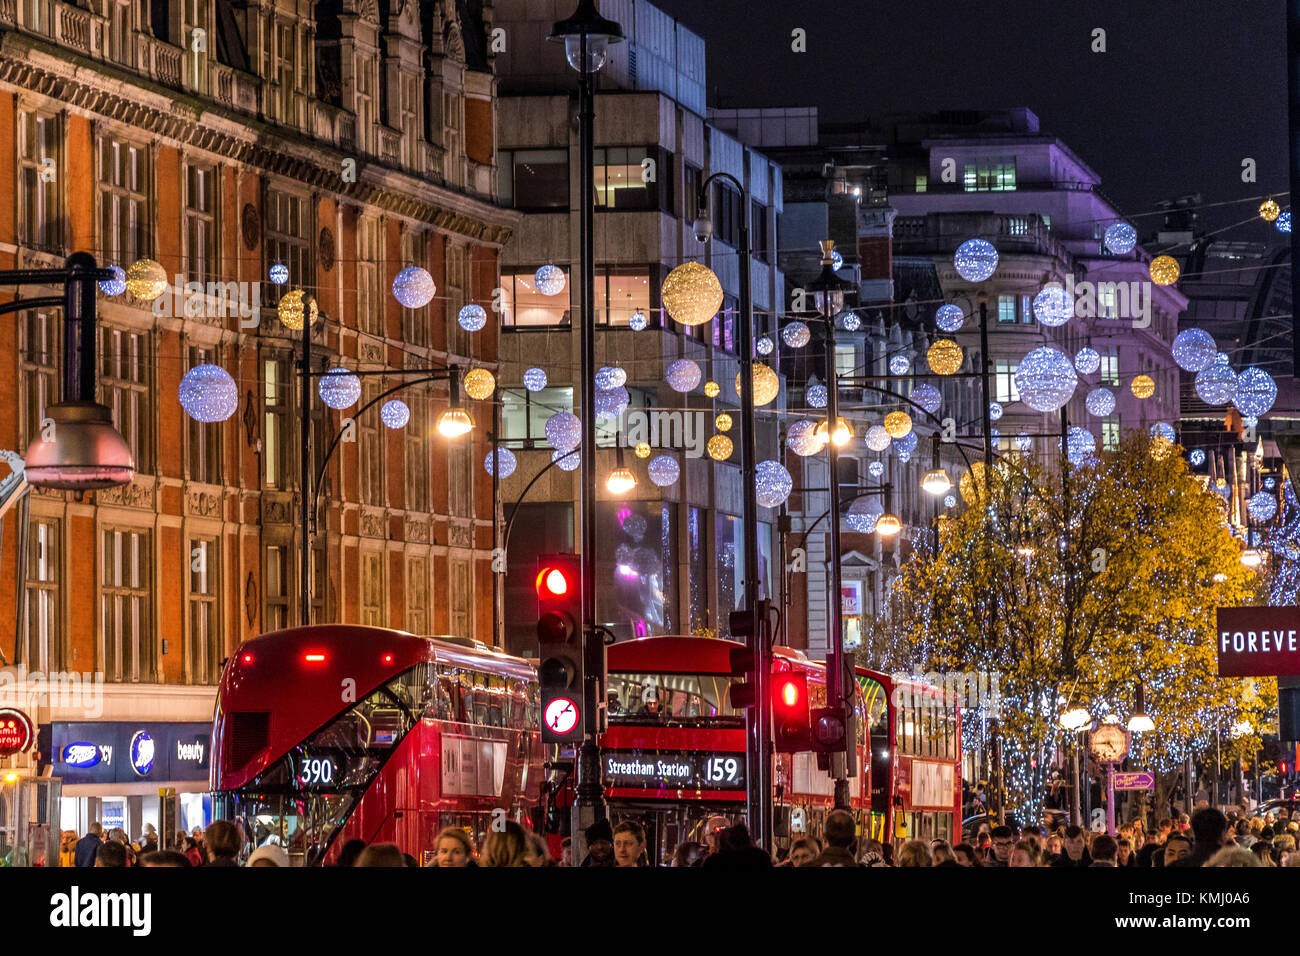 Le decorazioni di Natale di Oxford St con gli autobus di Londra, a Natale imballato con i clienti di Natale che camminano lungo Oxford St, Londra, Regno Unito Foto Stock